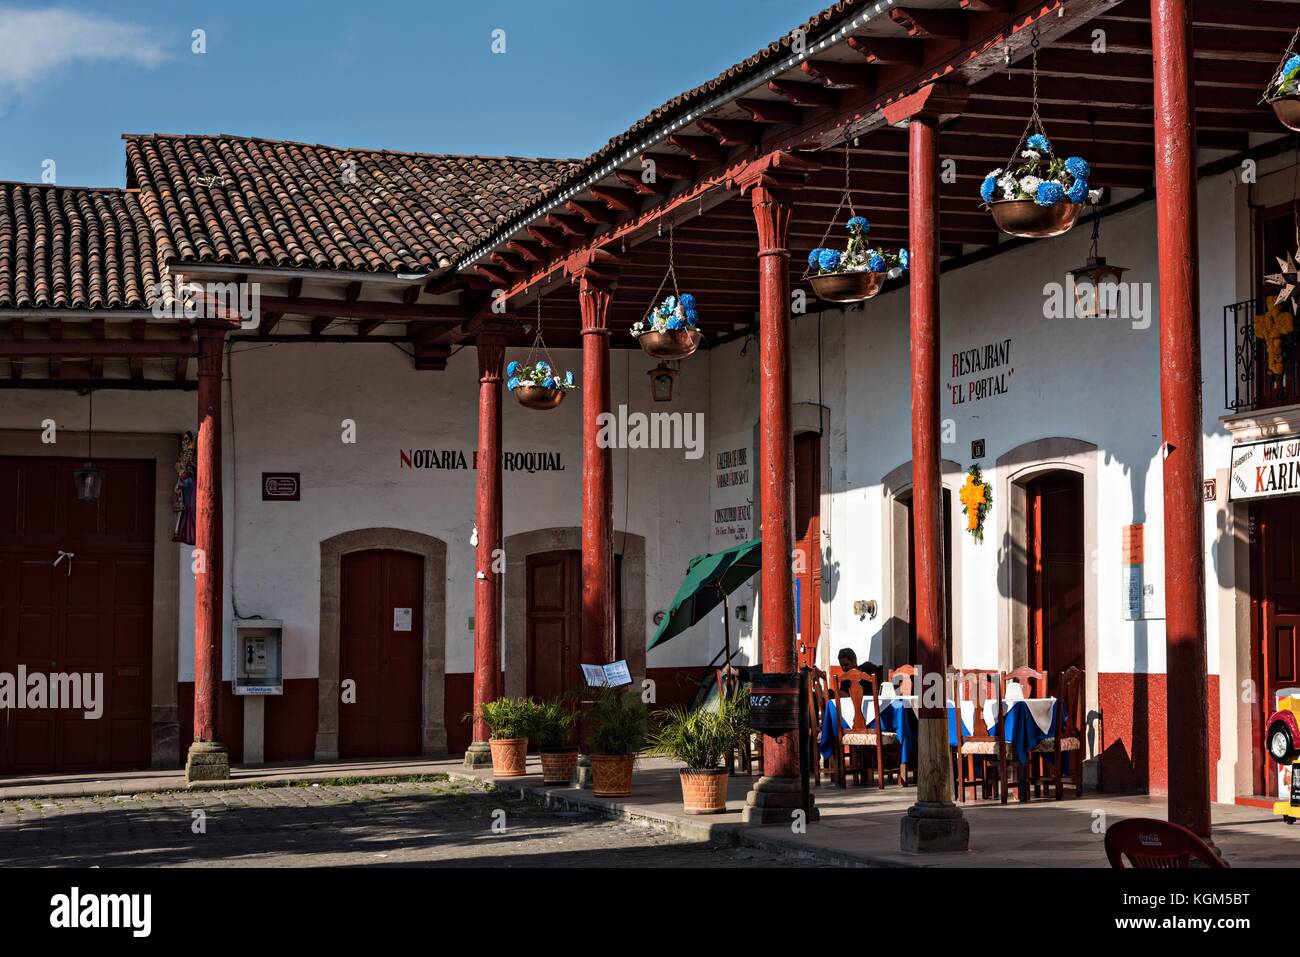 Plaza De Matamoros in Santa Clara del Cobre, Michoacan, Mexico. Stock Photo